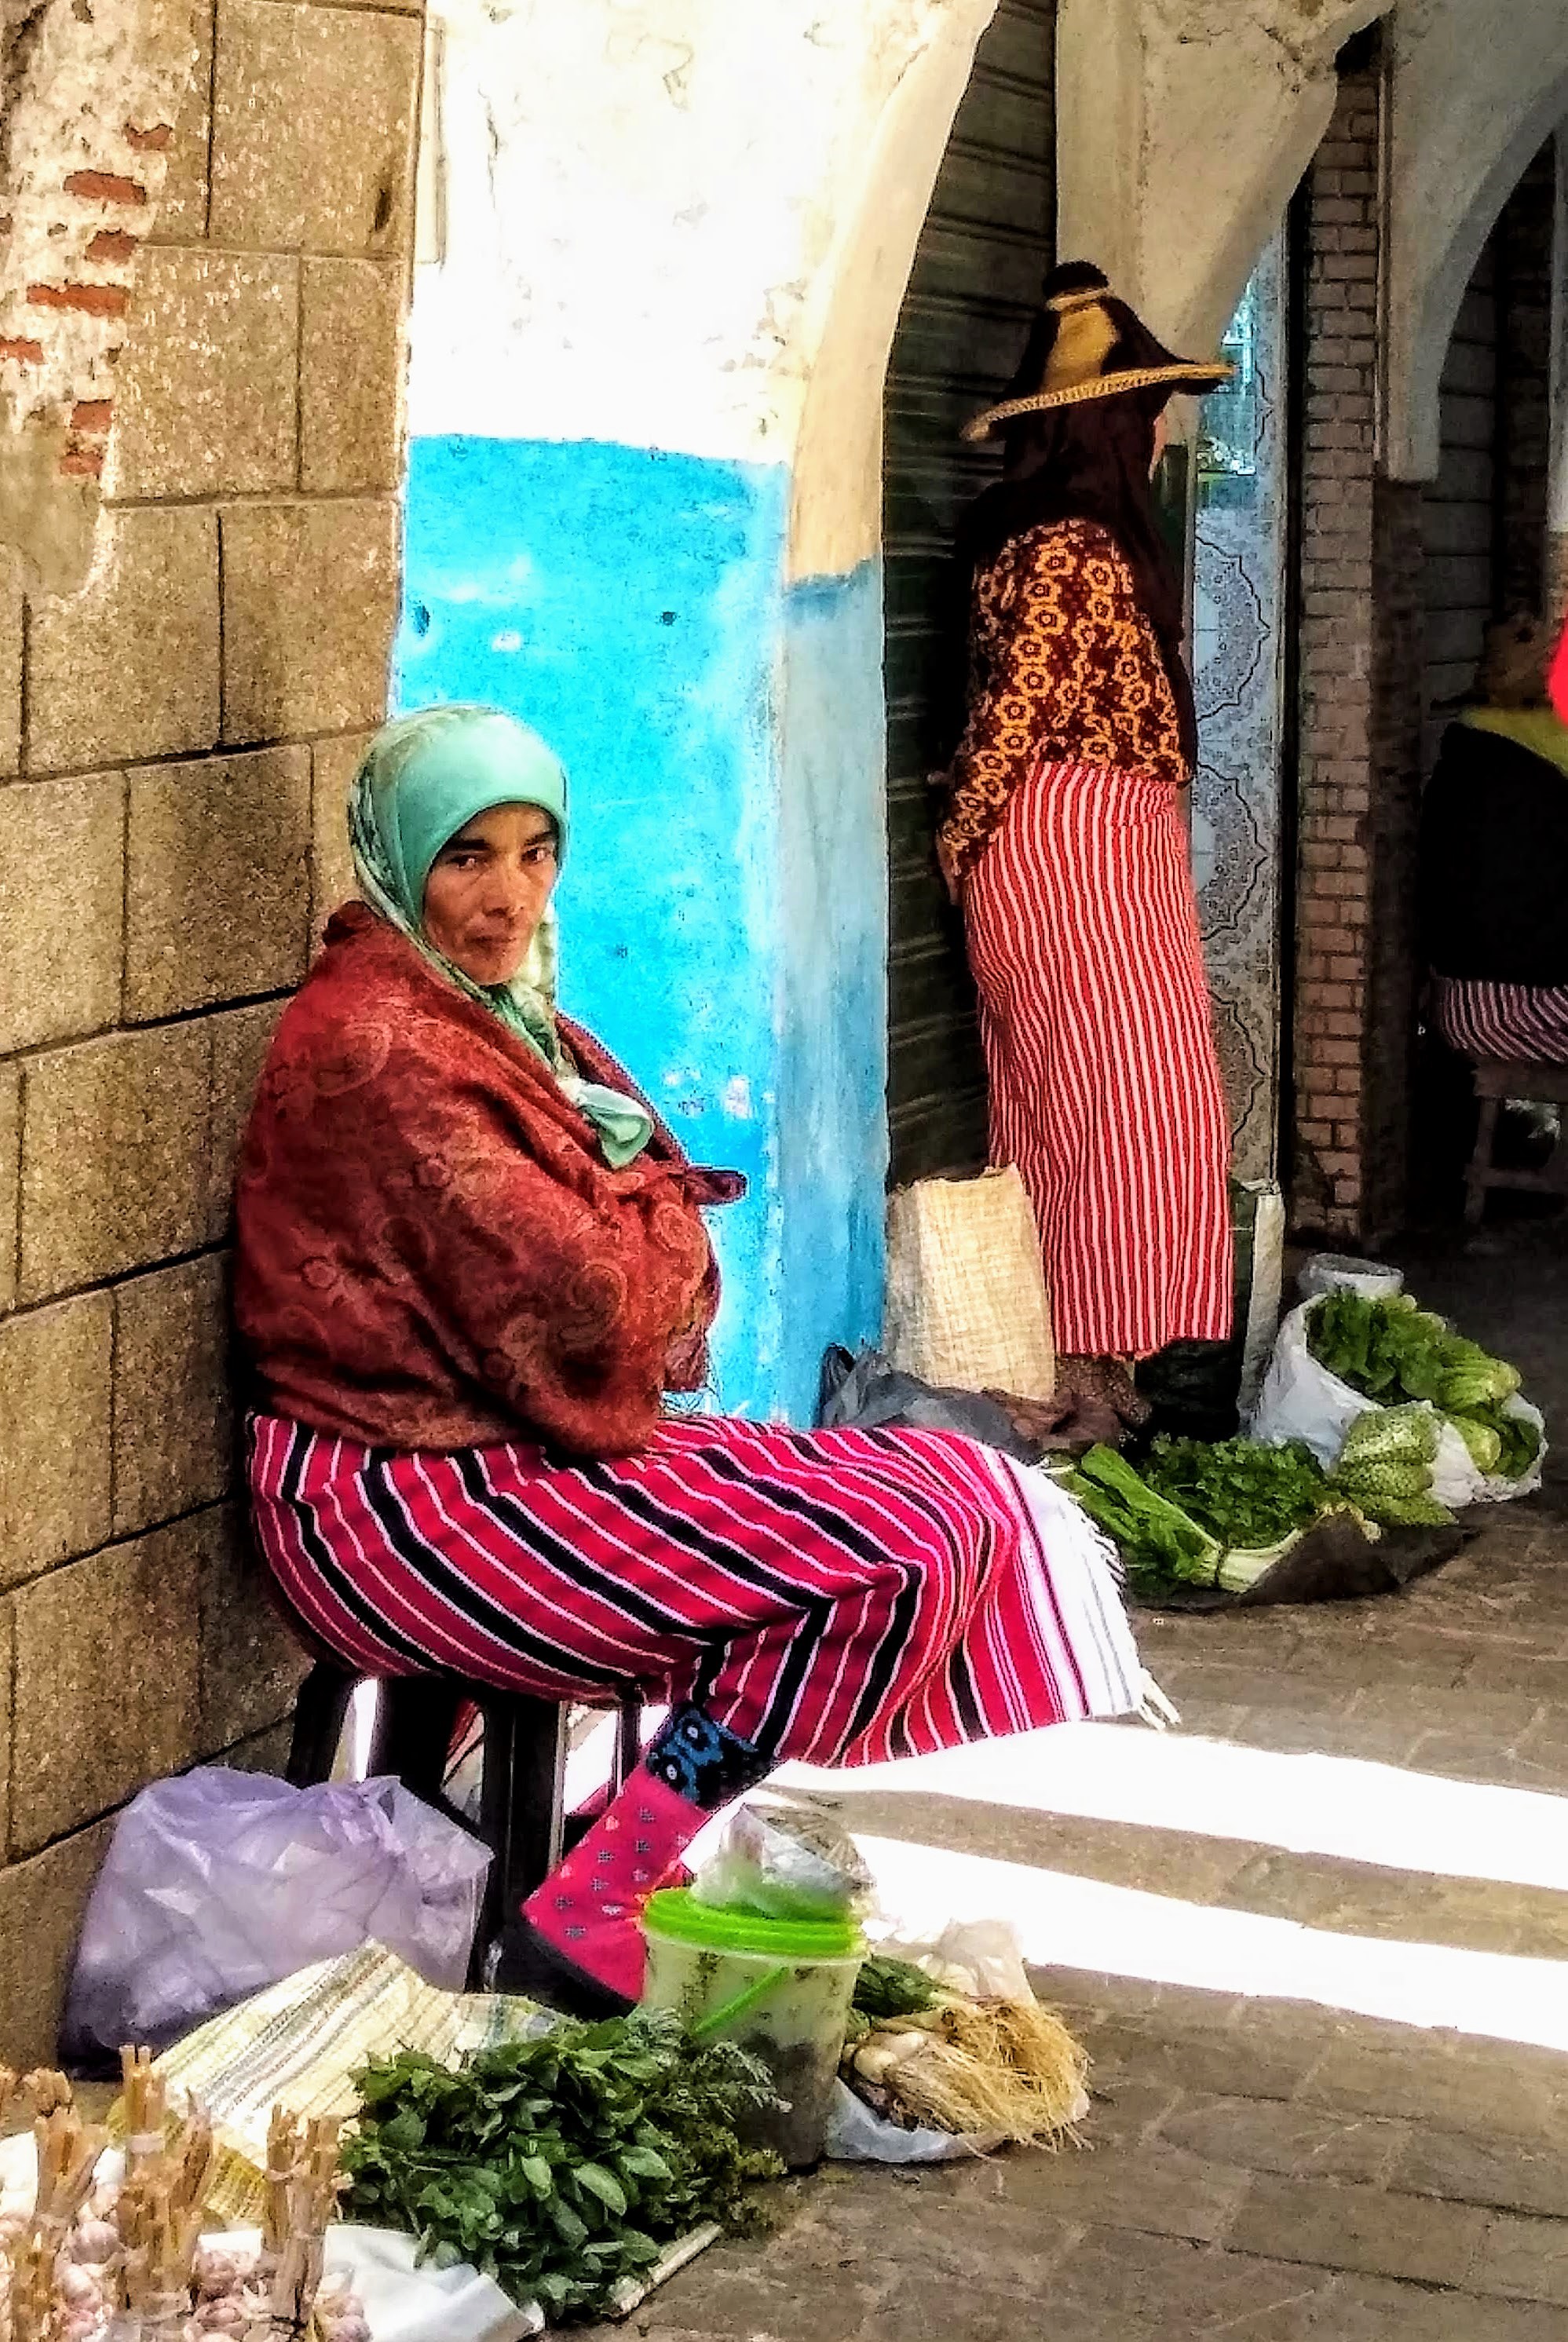 Woman vendor, Tetouan Morocco, UNESCO